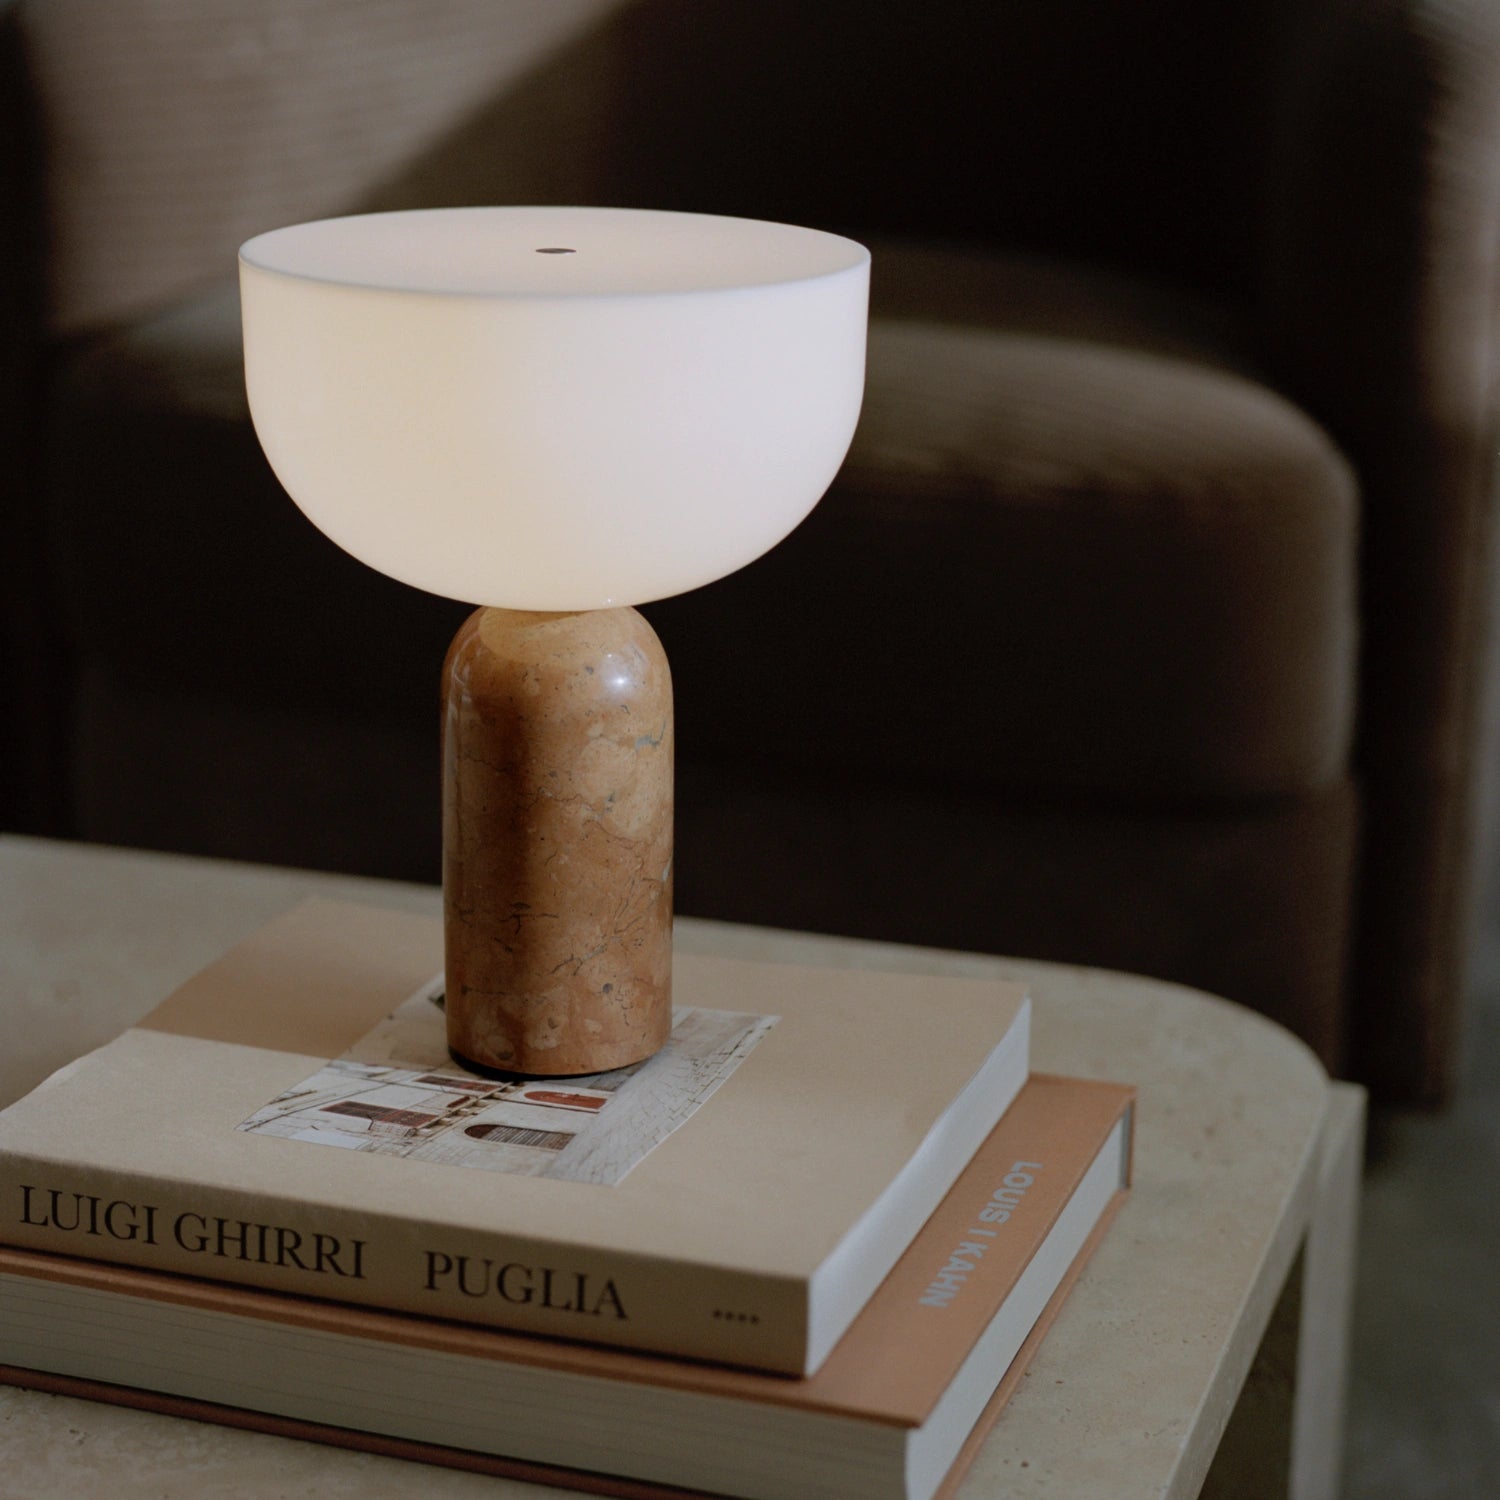 New Works Kizu Table Lamp, Portable Breccia Pernice - KANSO#Color_Breccia Pernice